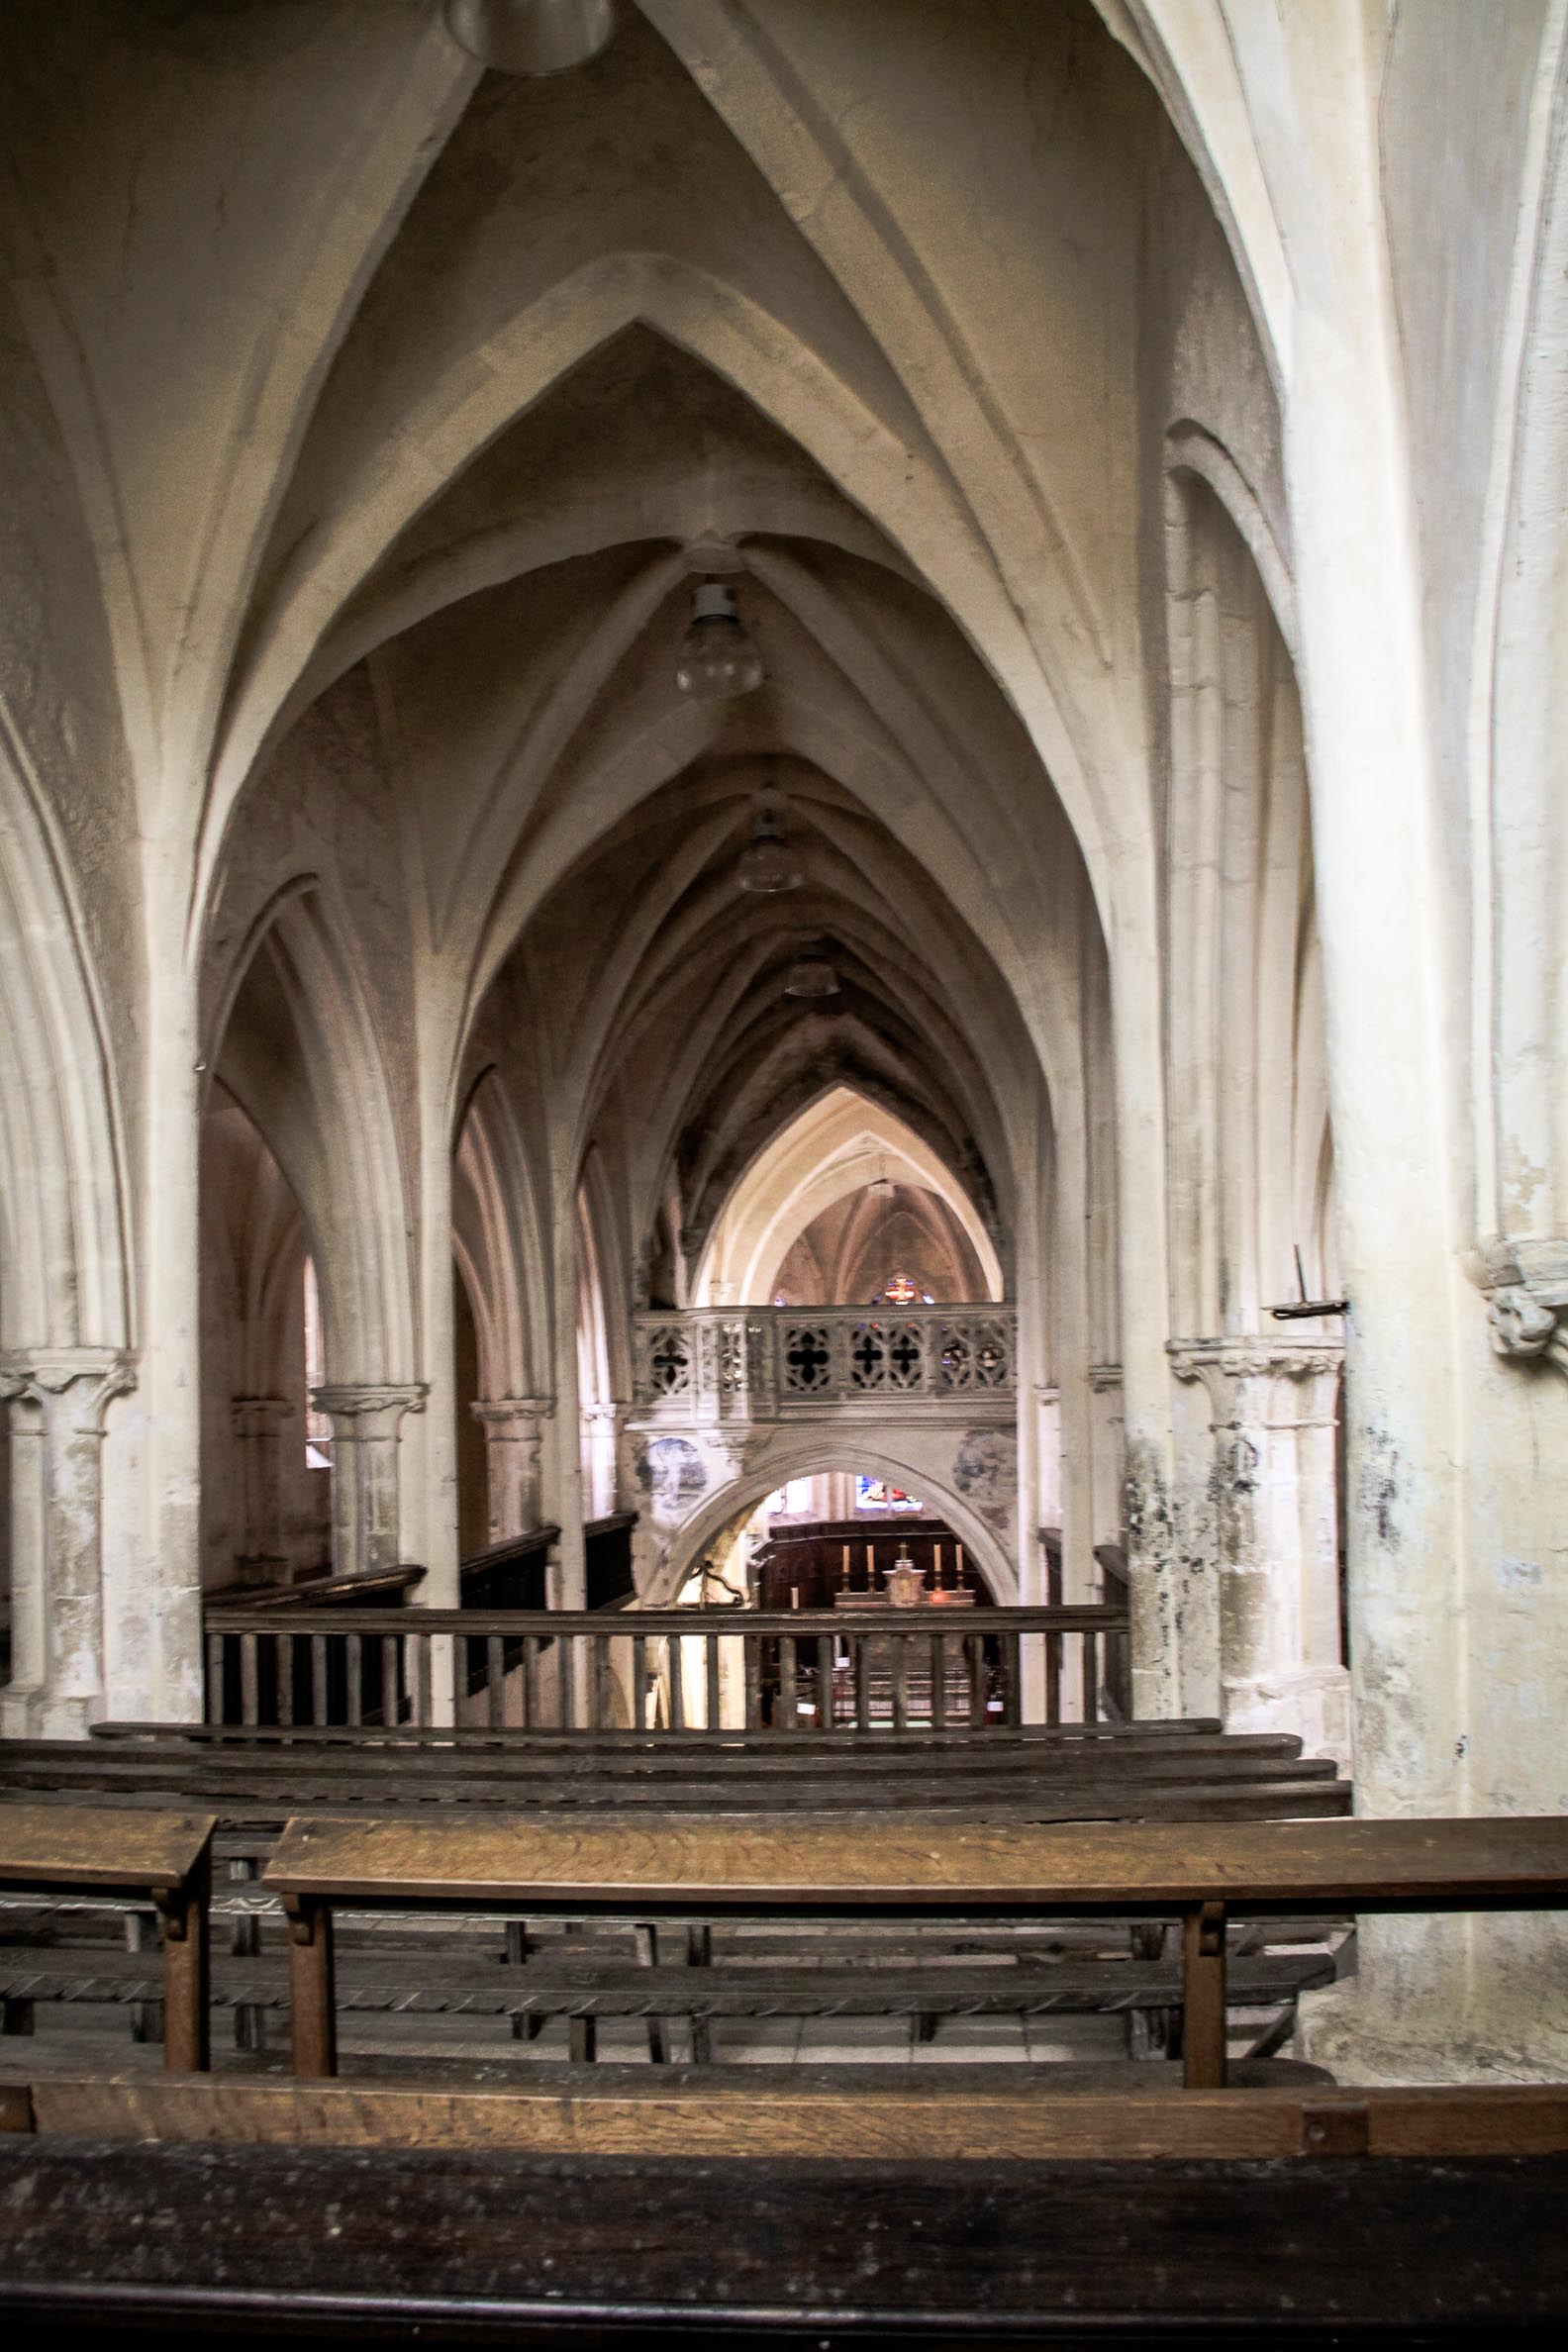 Eglises et abbayes Bourguignonnes : Eglise de Flavigny-sur-Ozerain